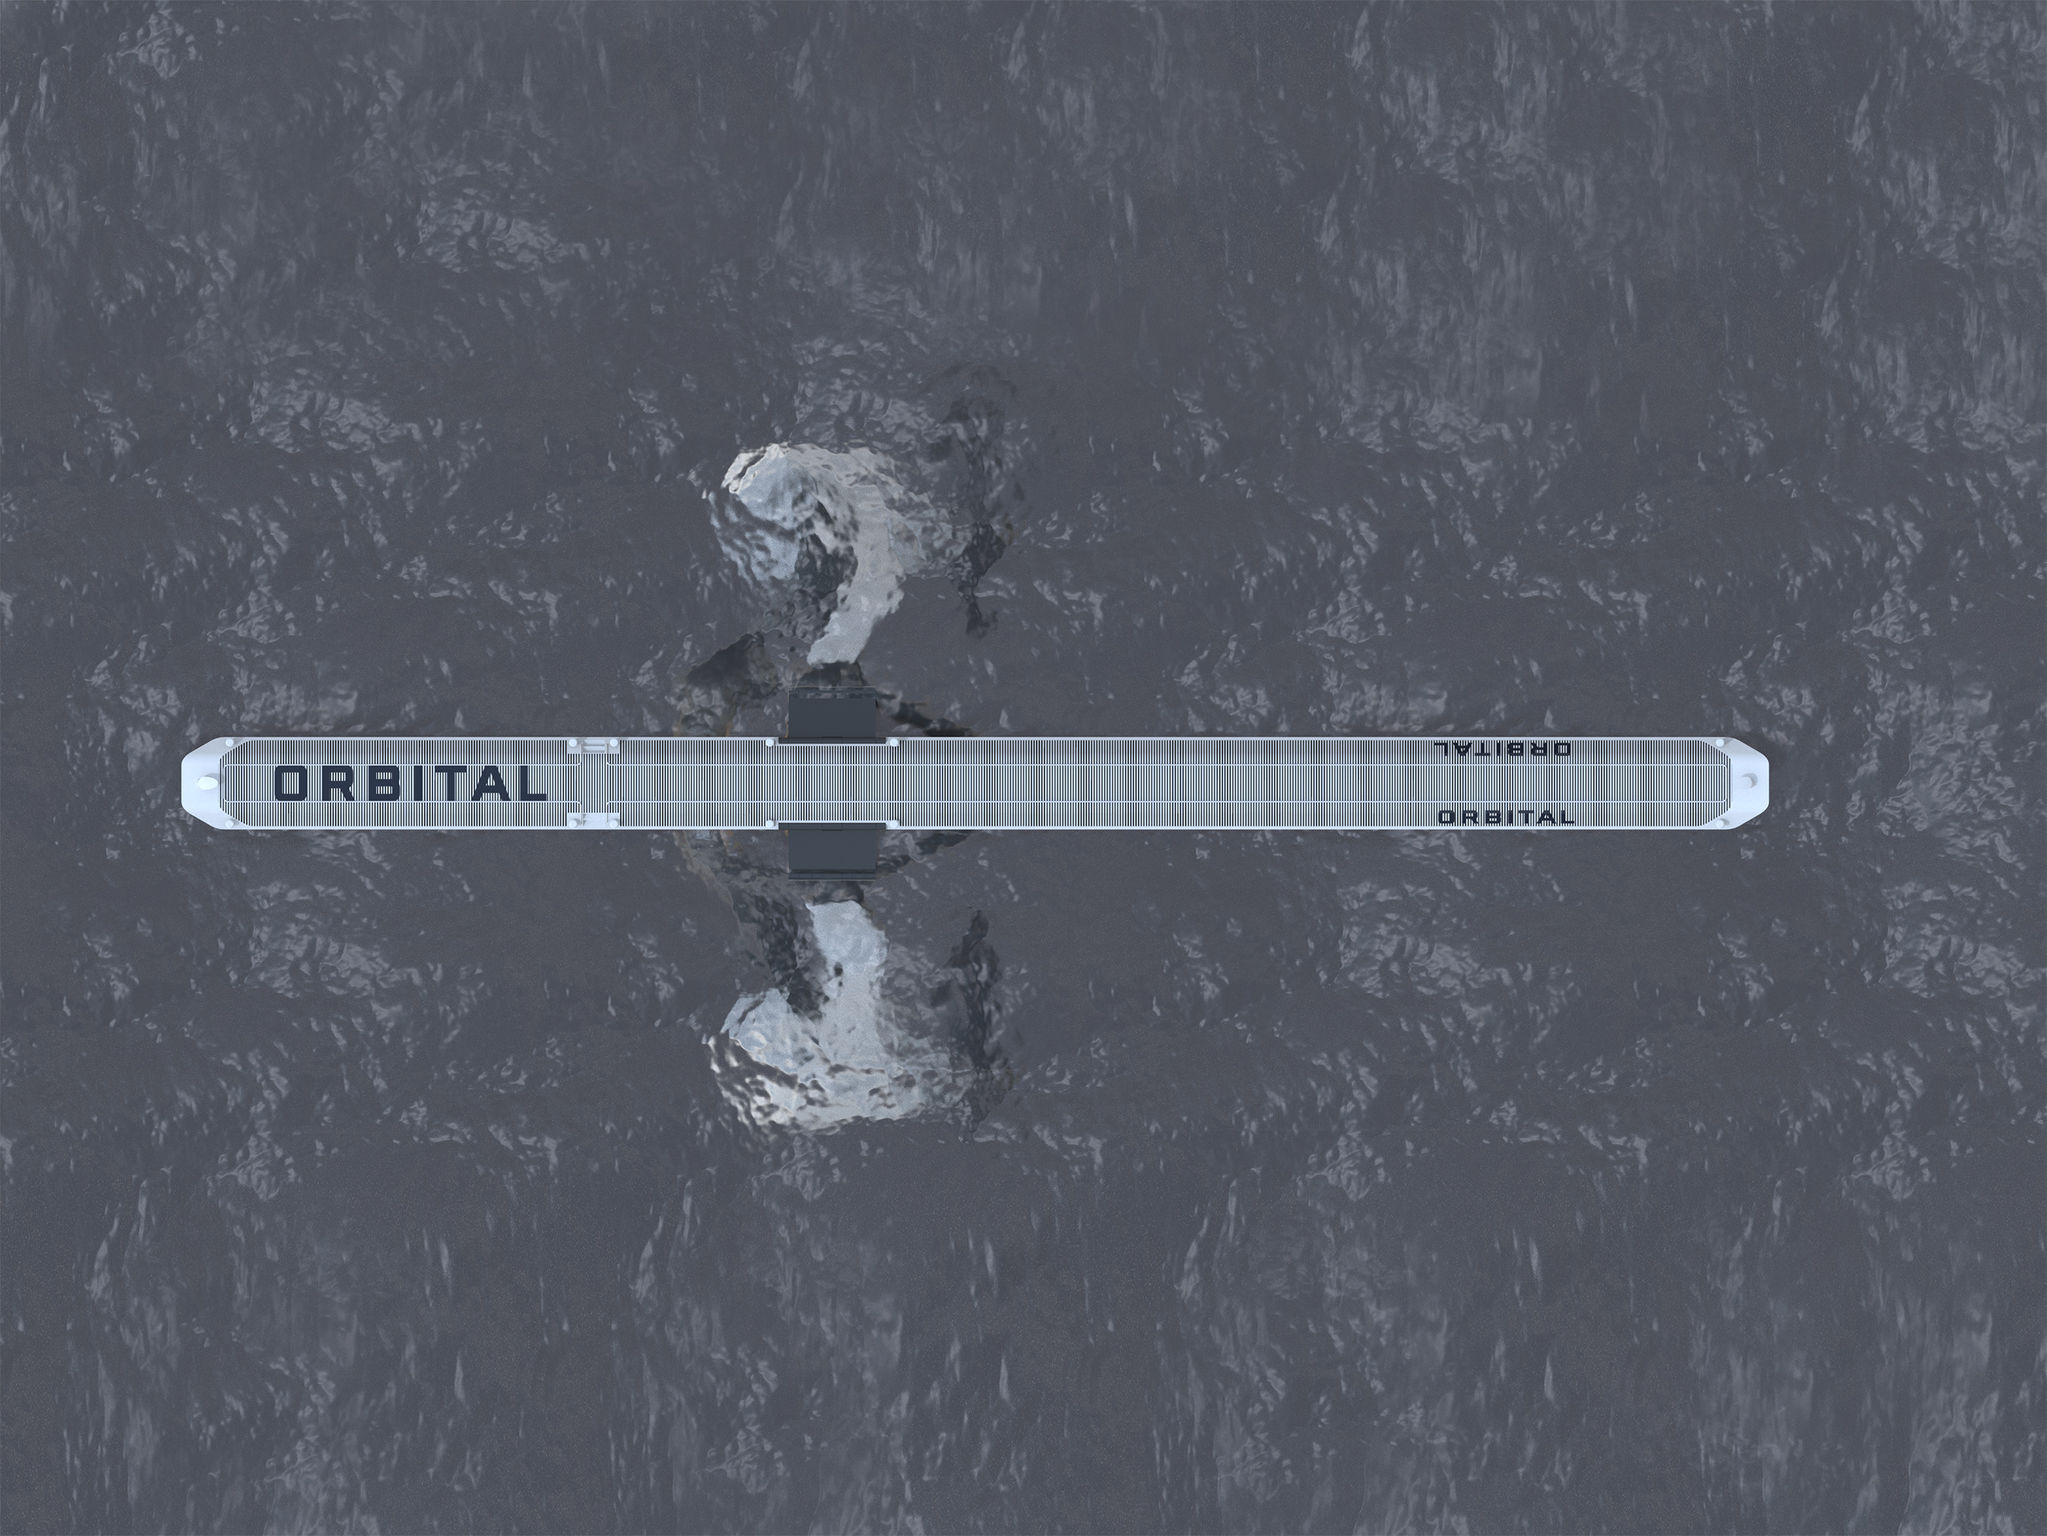 Orbital Vision Tidal Turbine